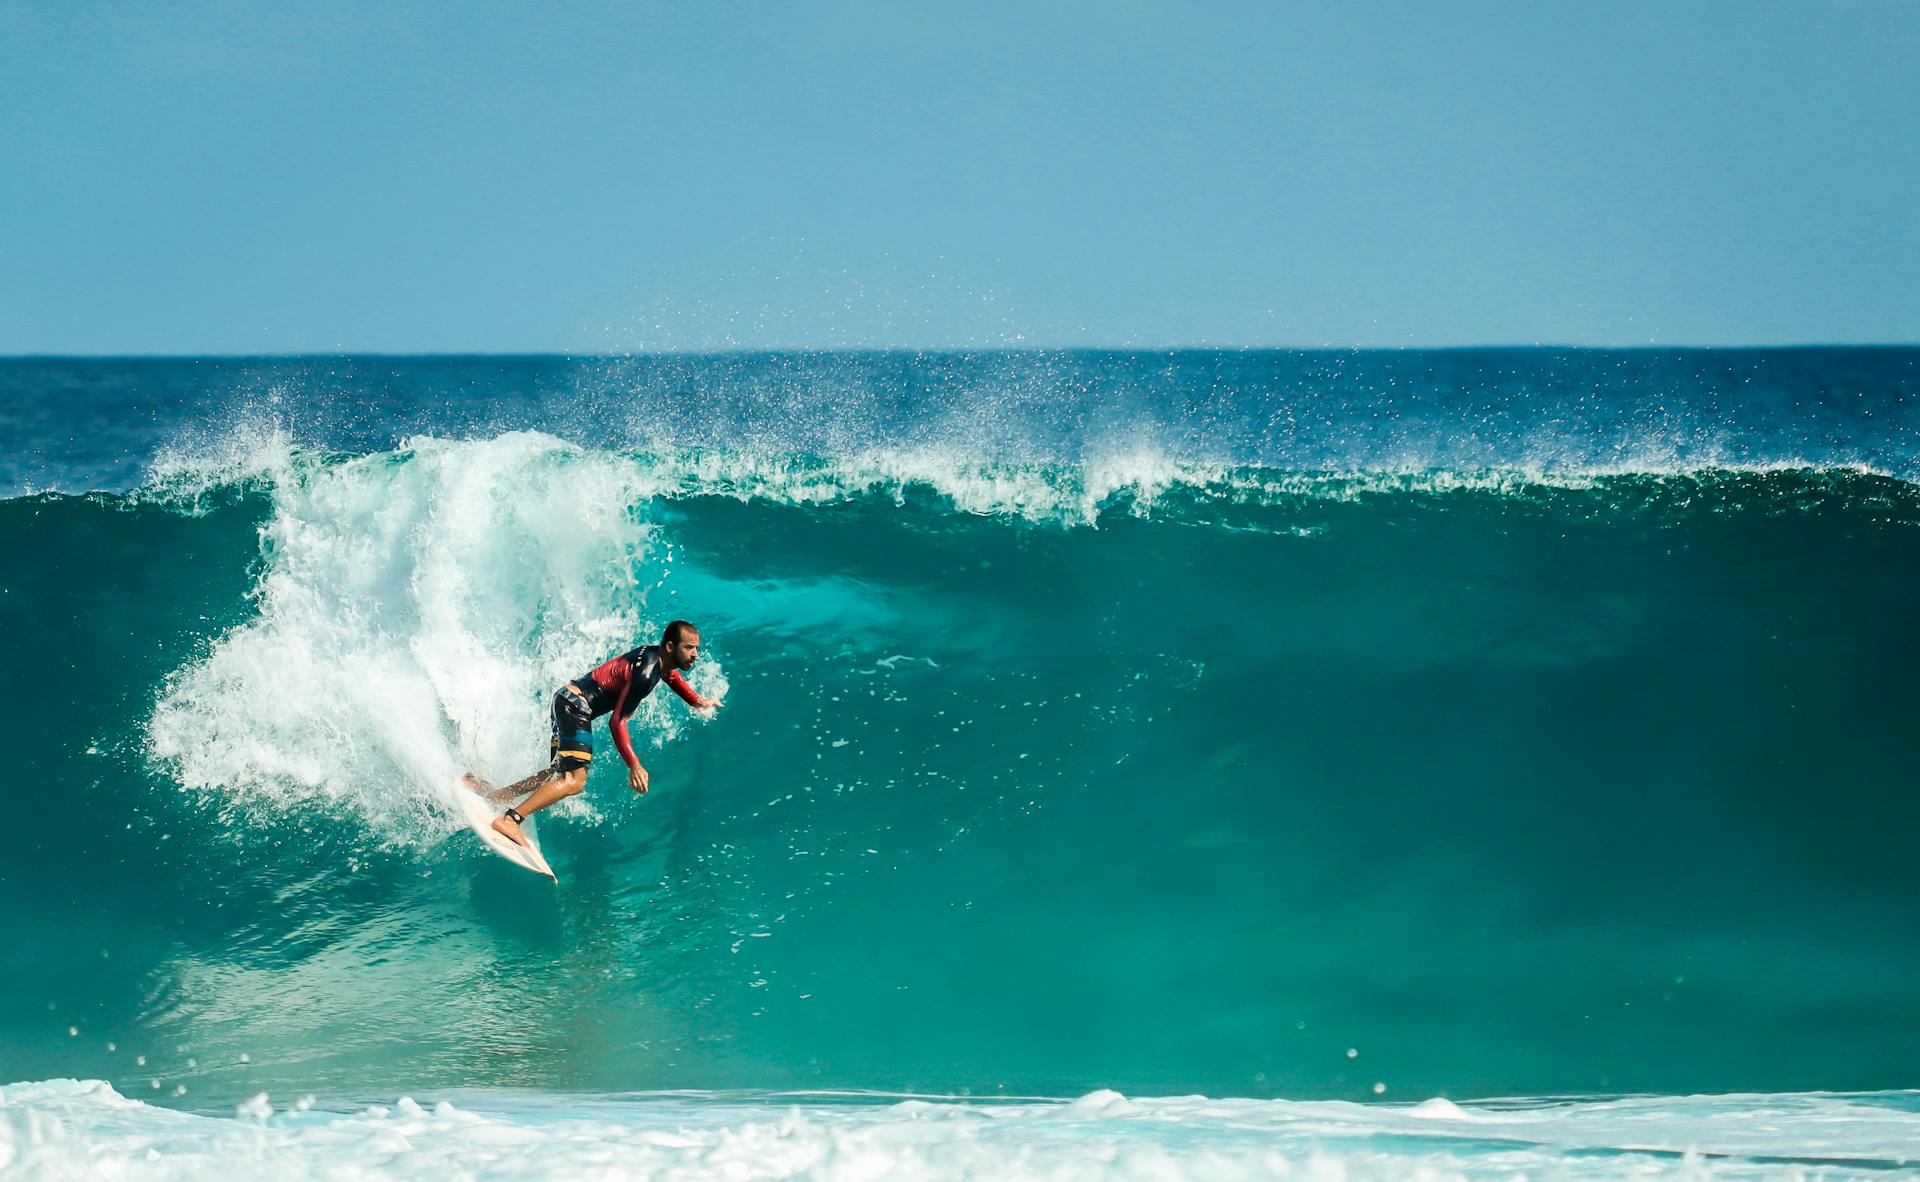 Comment choisir sa planche de surf ? Il existe trois principaux types de longboards, chacun adapté à un niveau de technicité et à des typologies de vagues. © Alexandre Saraiva Carniato, Pexels